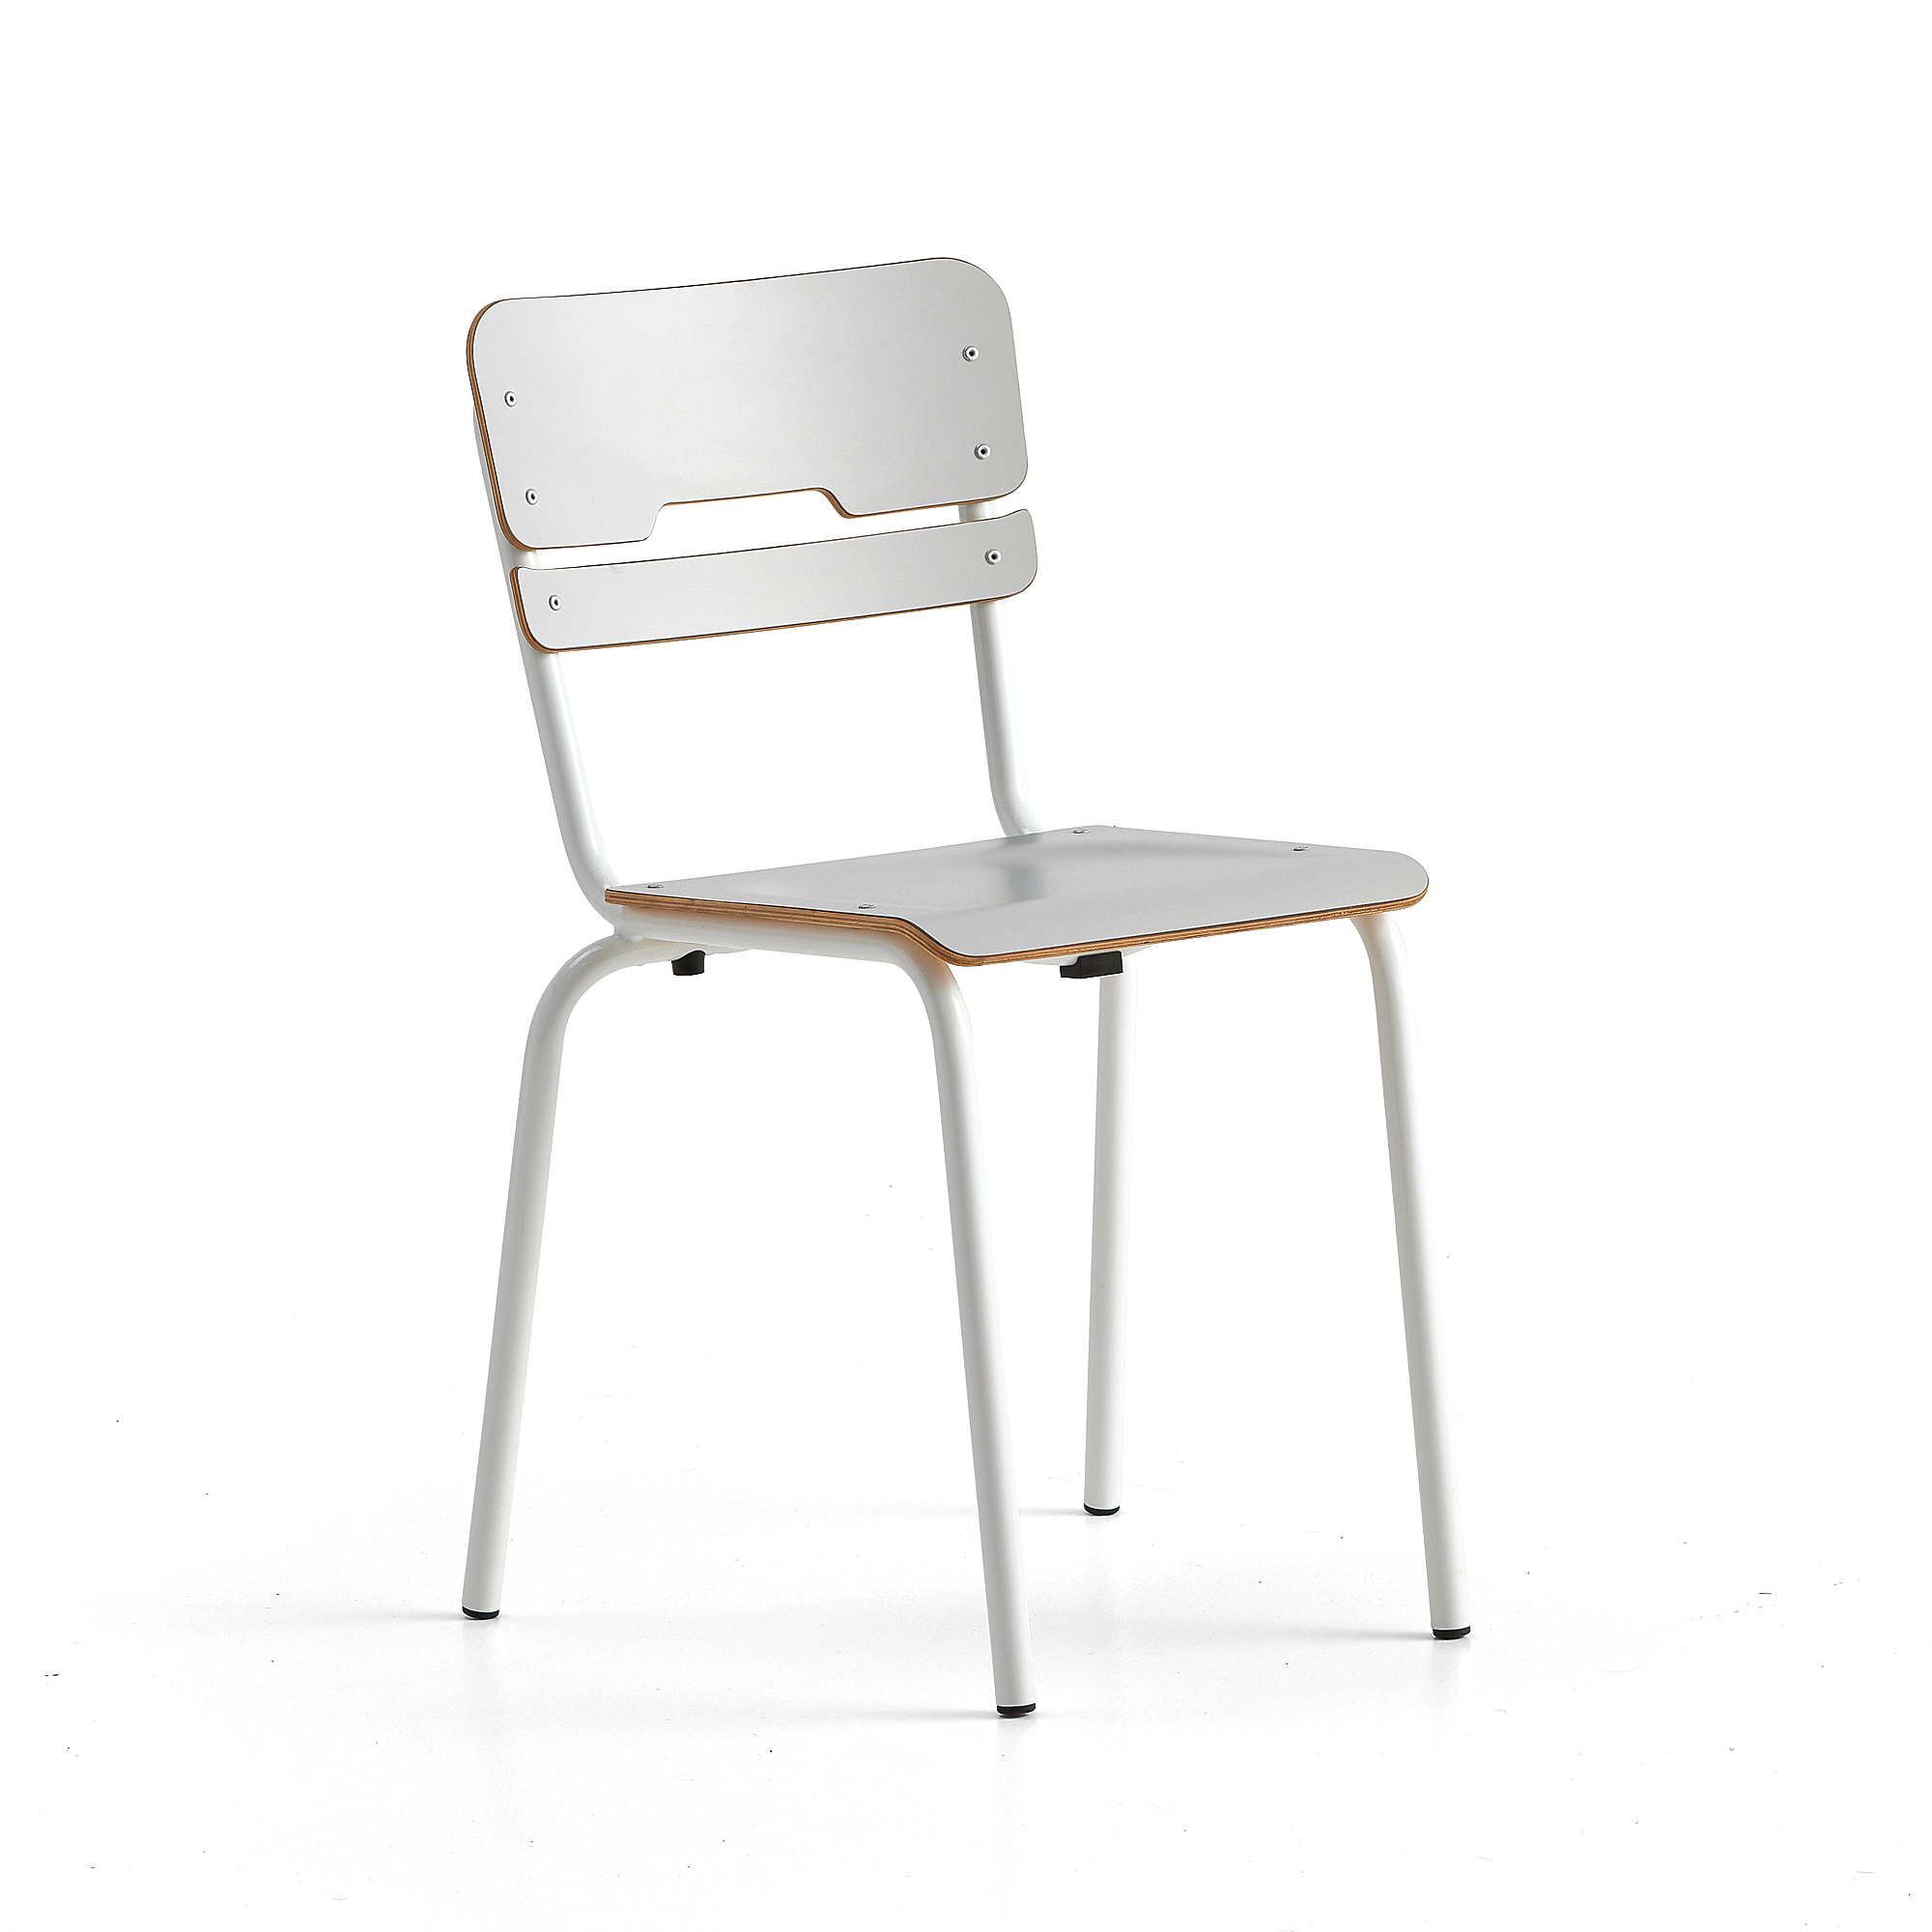 Školní židle SCIENTIA, sedák 360x360 mm, výška 460 mm, bílá/šedá